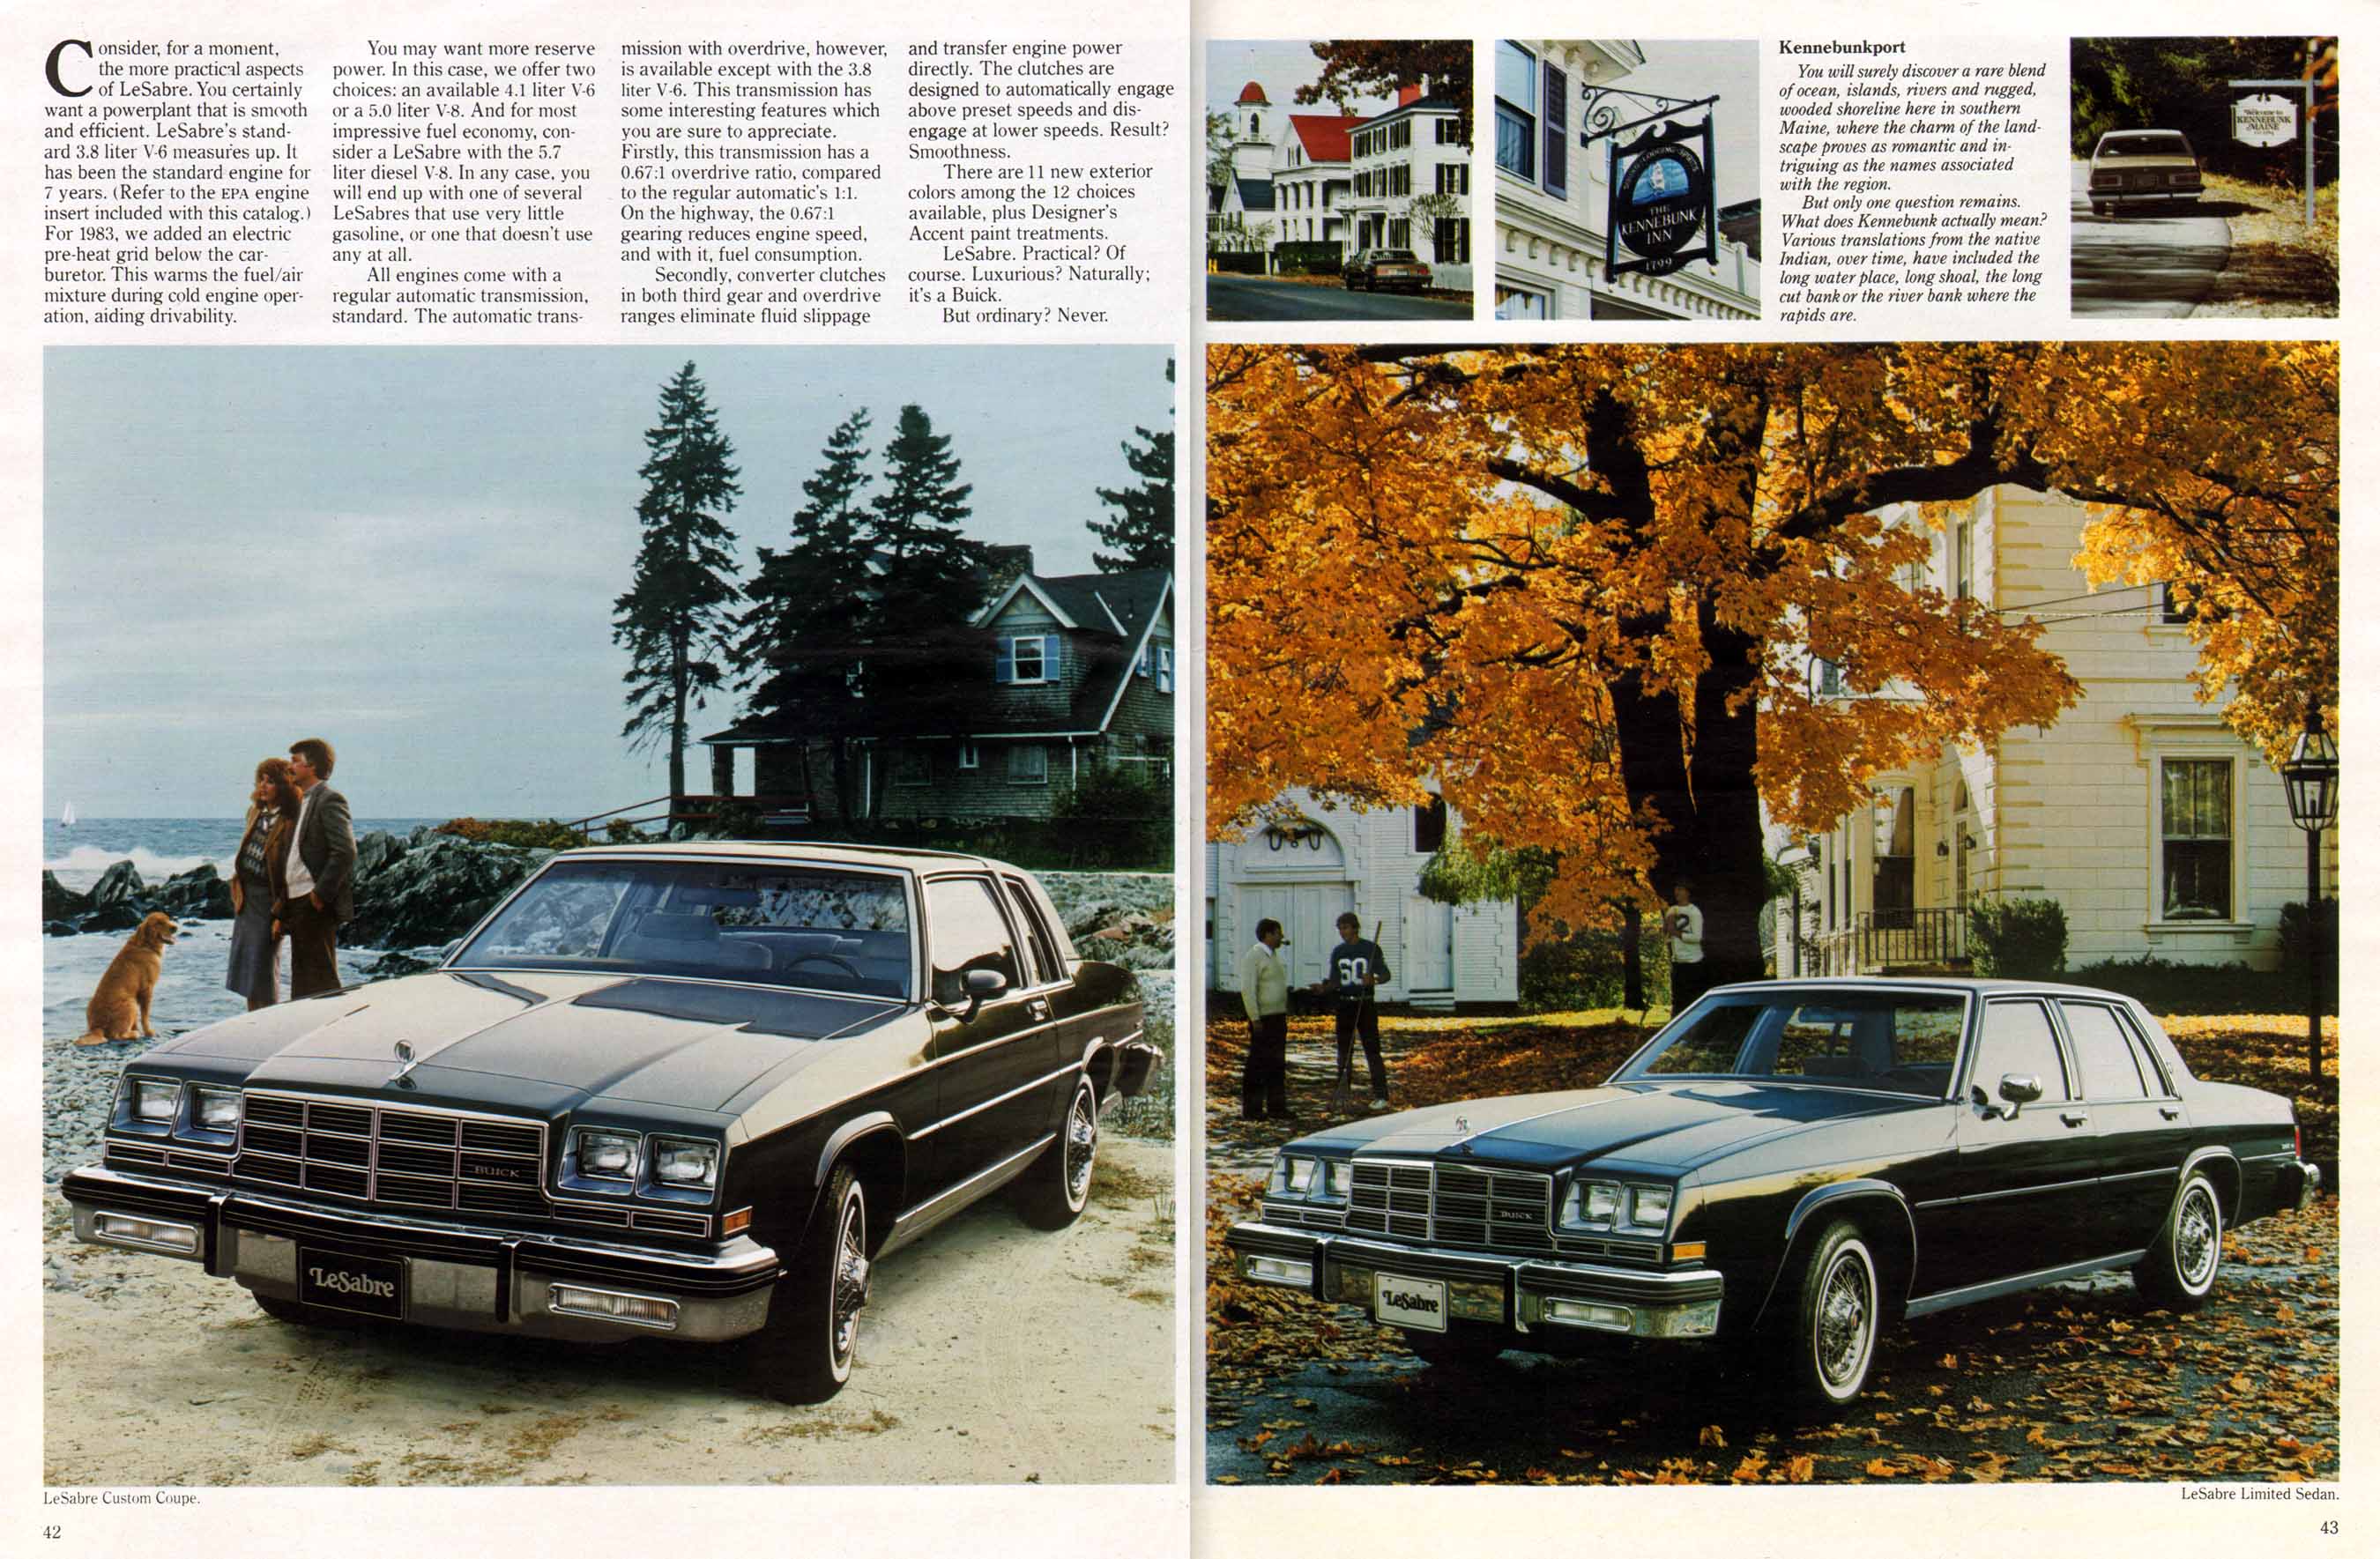 1983 Buick Full Line Prestige-42-43